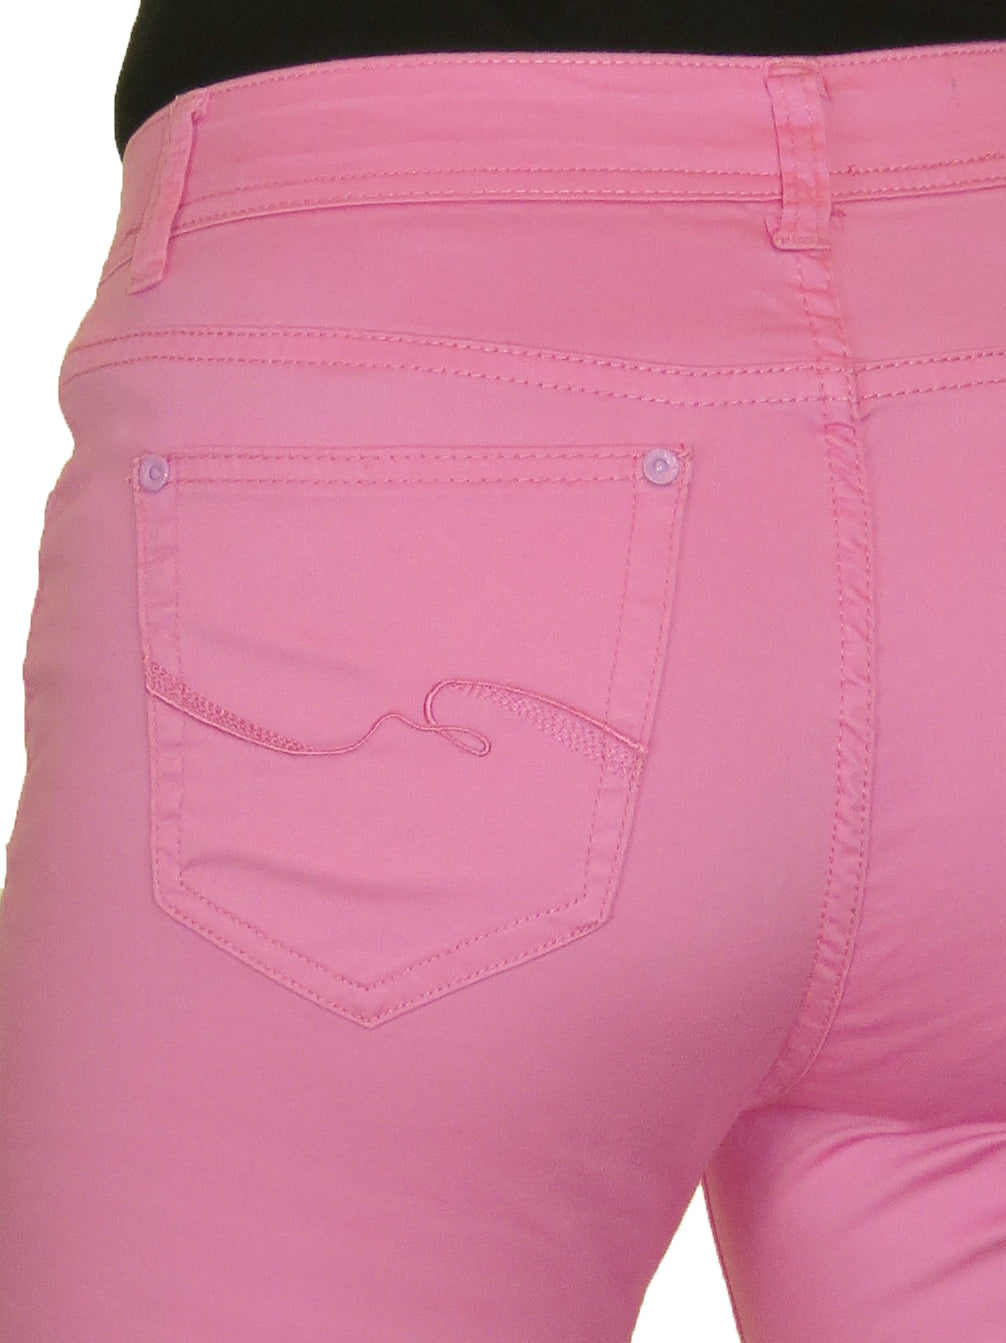 Turn Up Cuff Jeans Chino Stretch Capri Cropped Pink